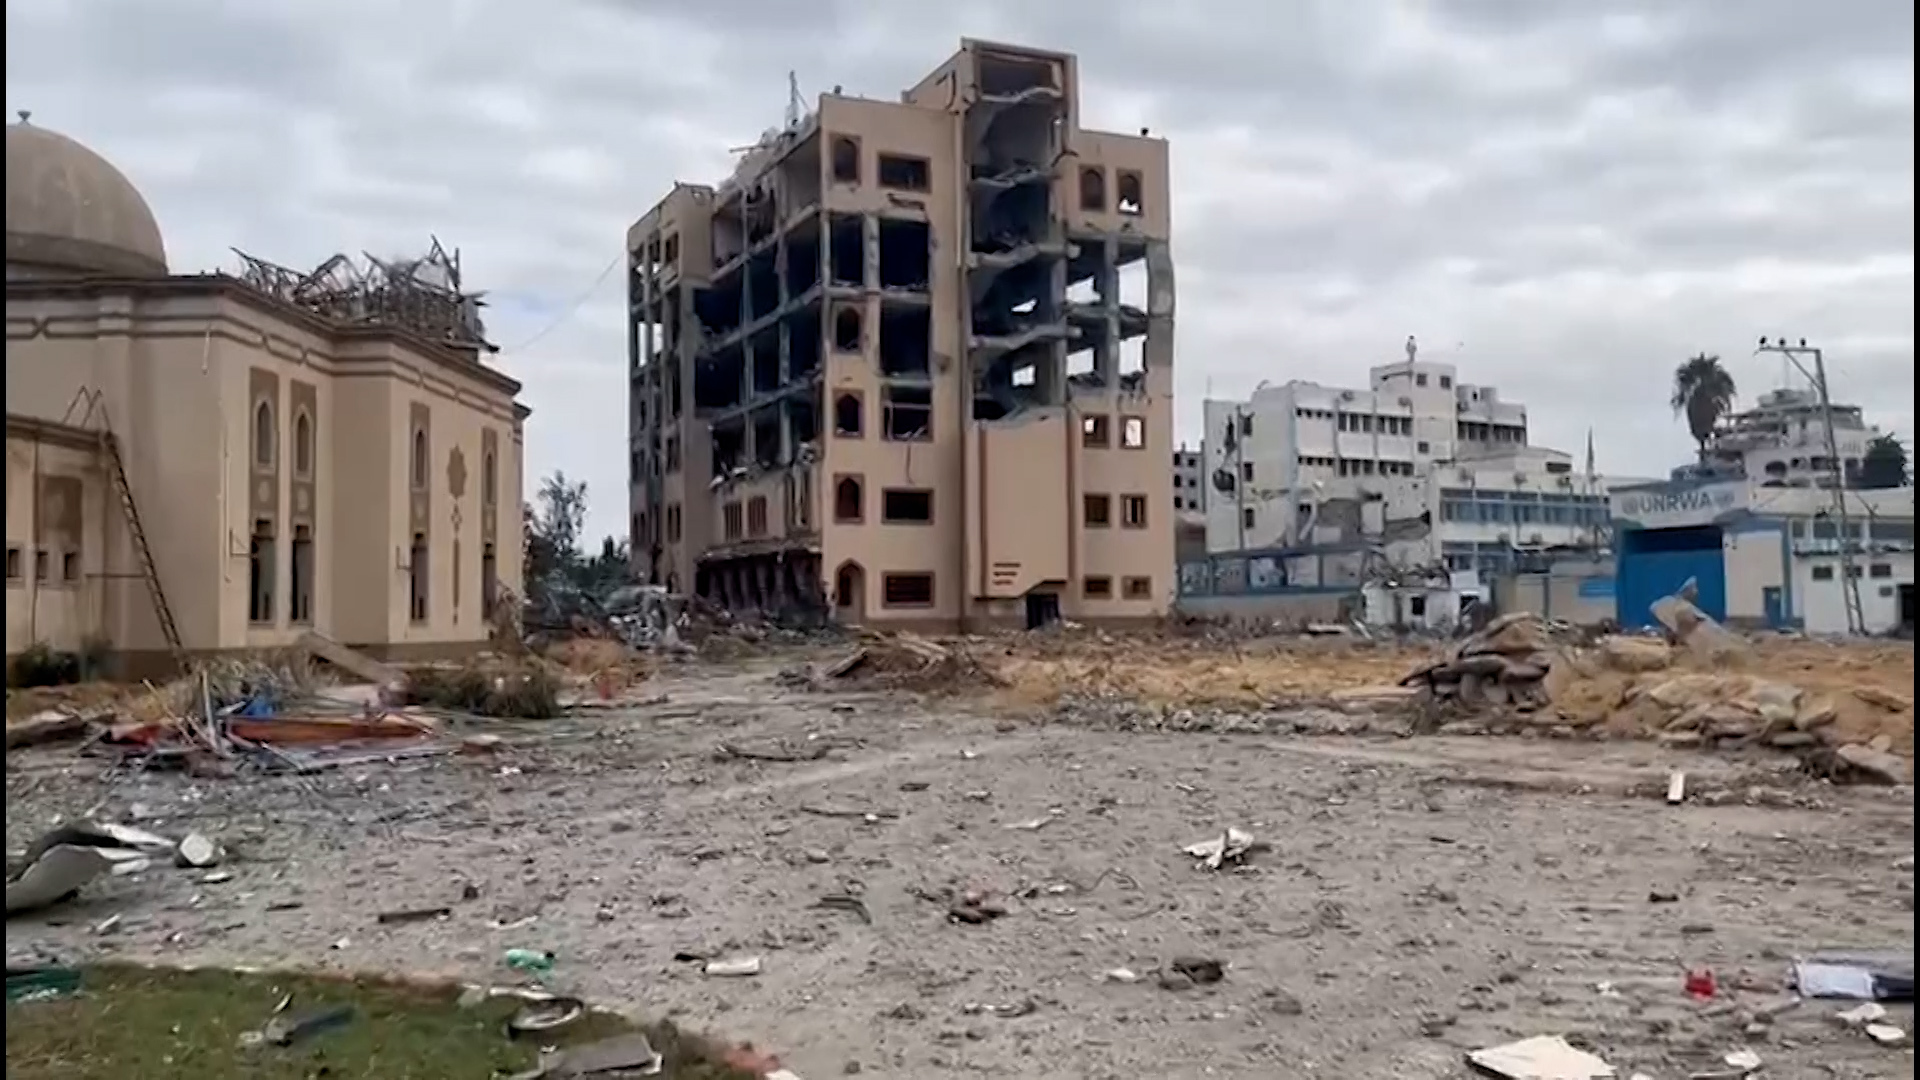 البوكس نيوز ترصد آثار الدمار للجامعة الإسلامية في مدينة غزة | البرامج – البوكس نيوز